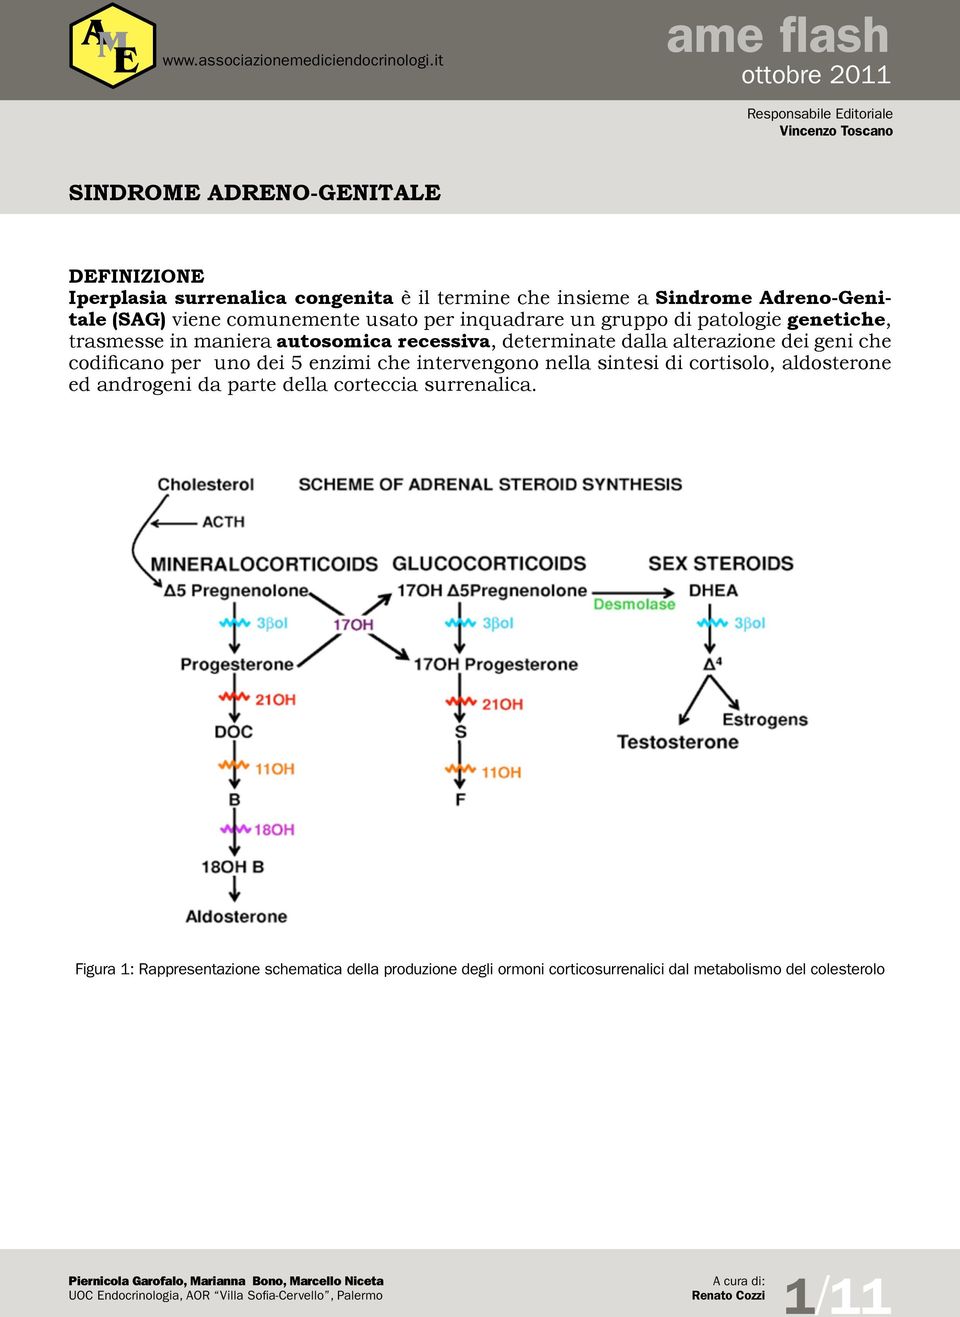 enzimi che intervengono nella sintesi di cortisolo, aldosterone ed androgeni da parte della corteccia surrenalica.